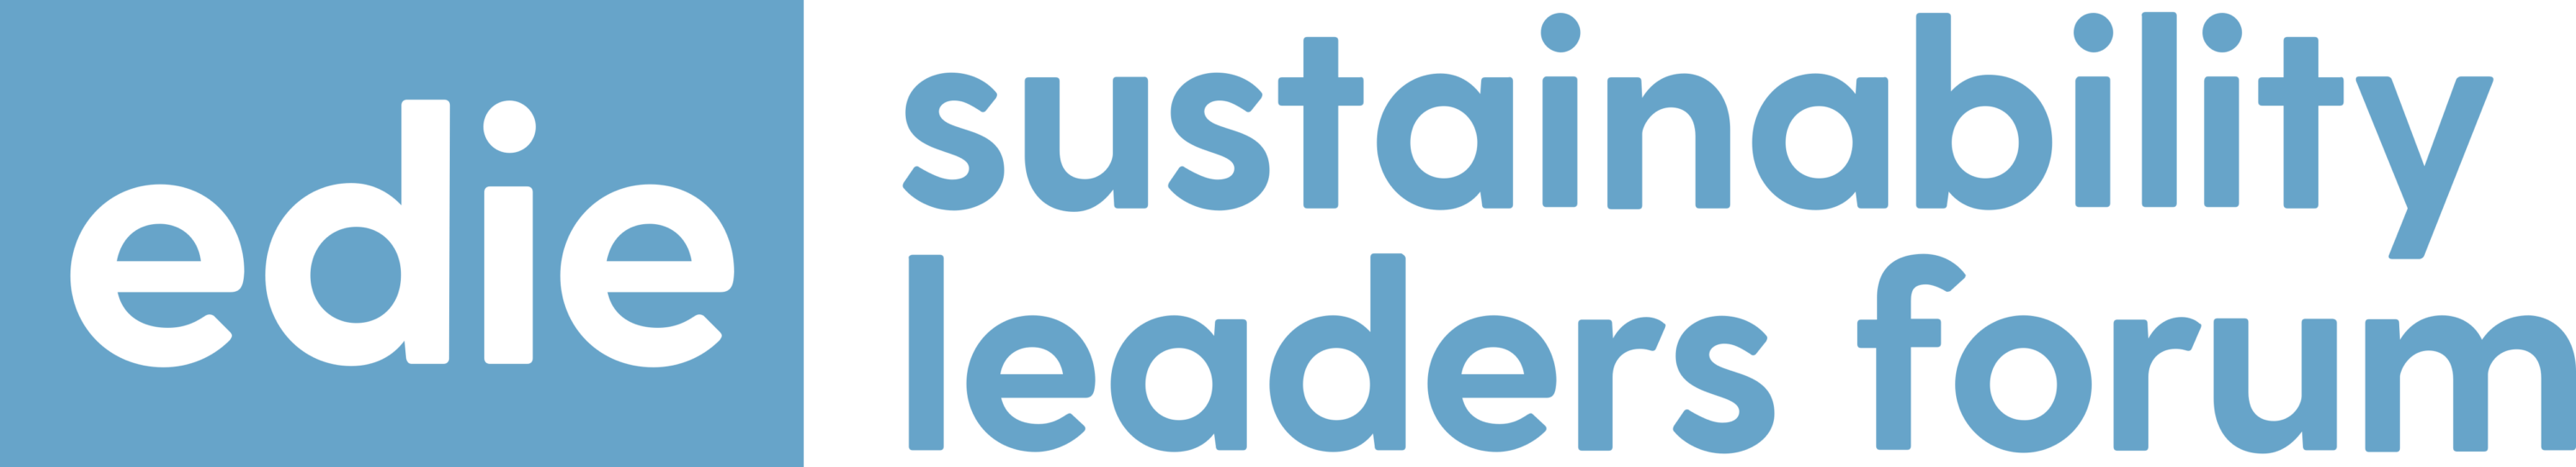 Edie Sustainability Leaders Forum Logo